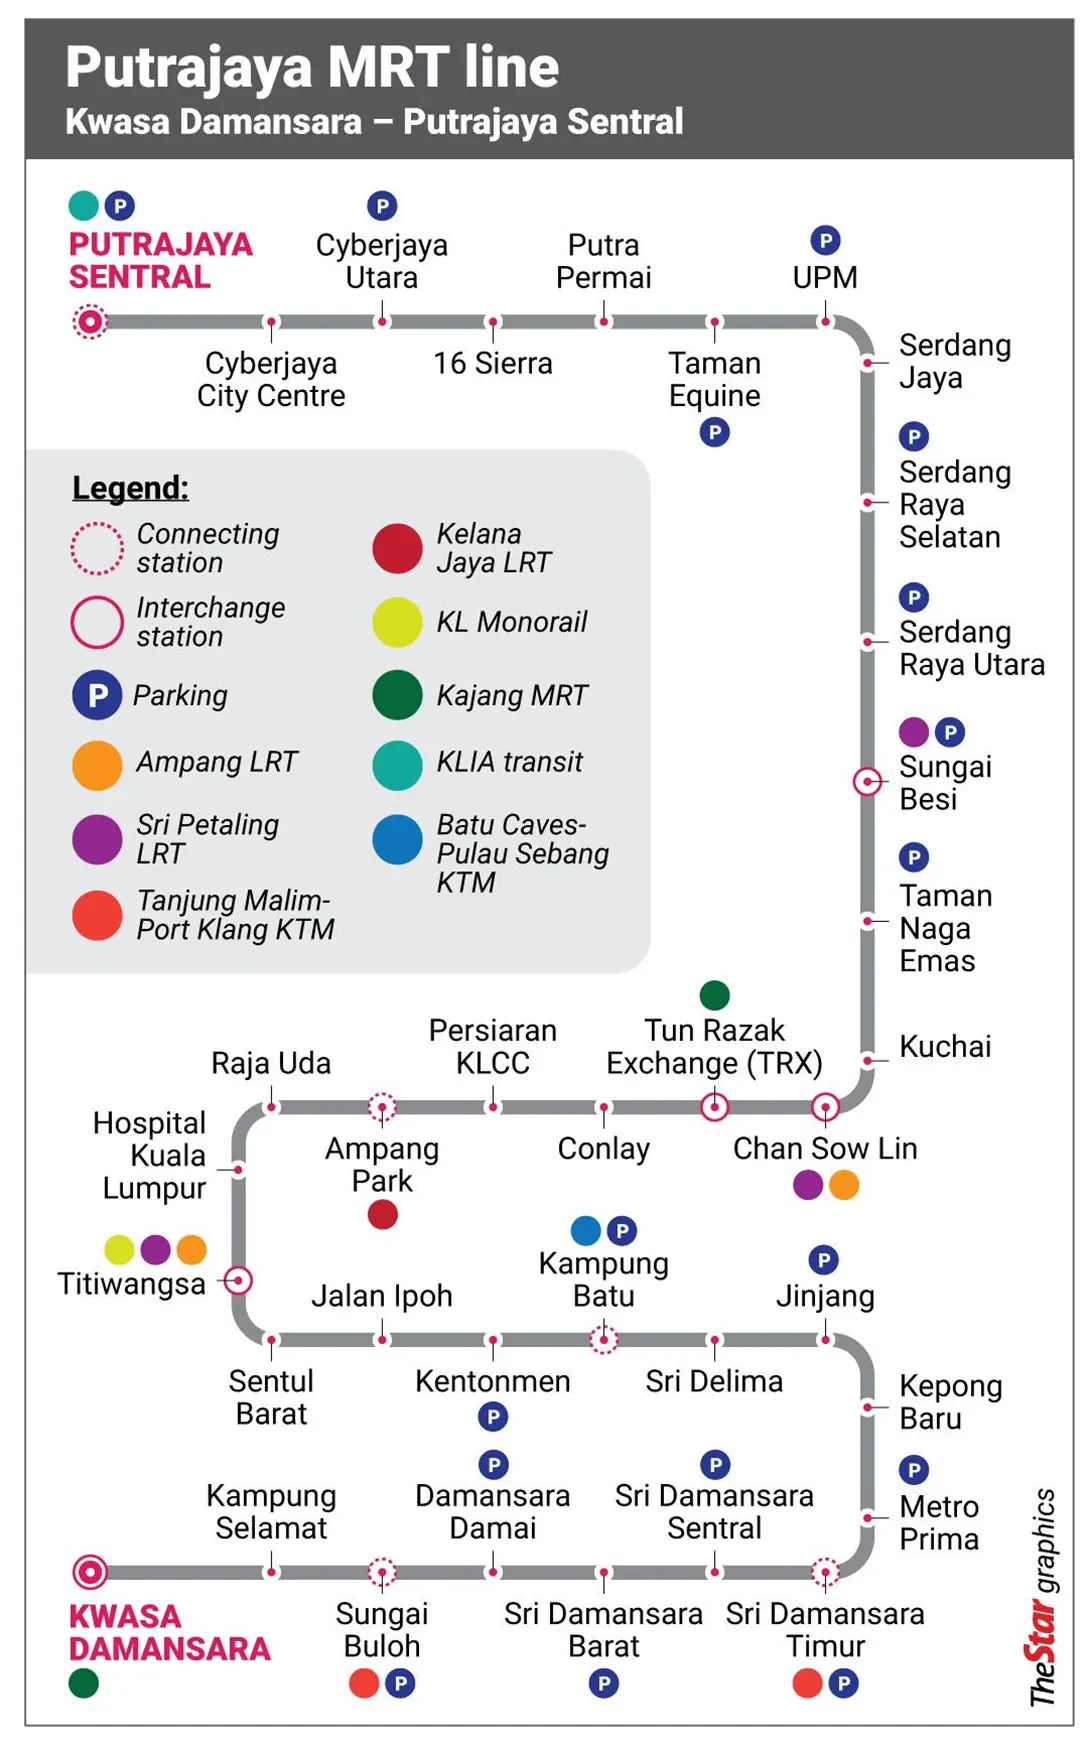 Putrajaya MRT Line